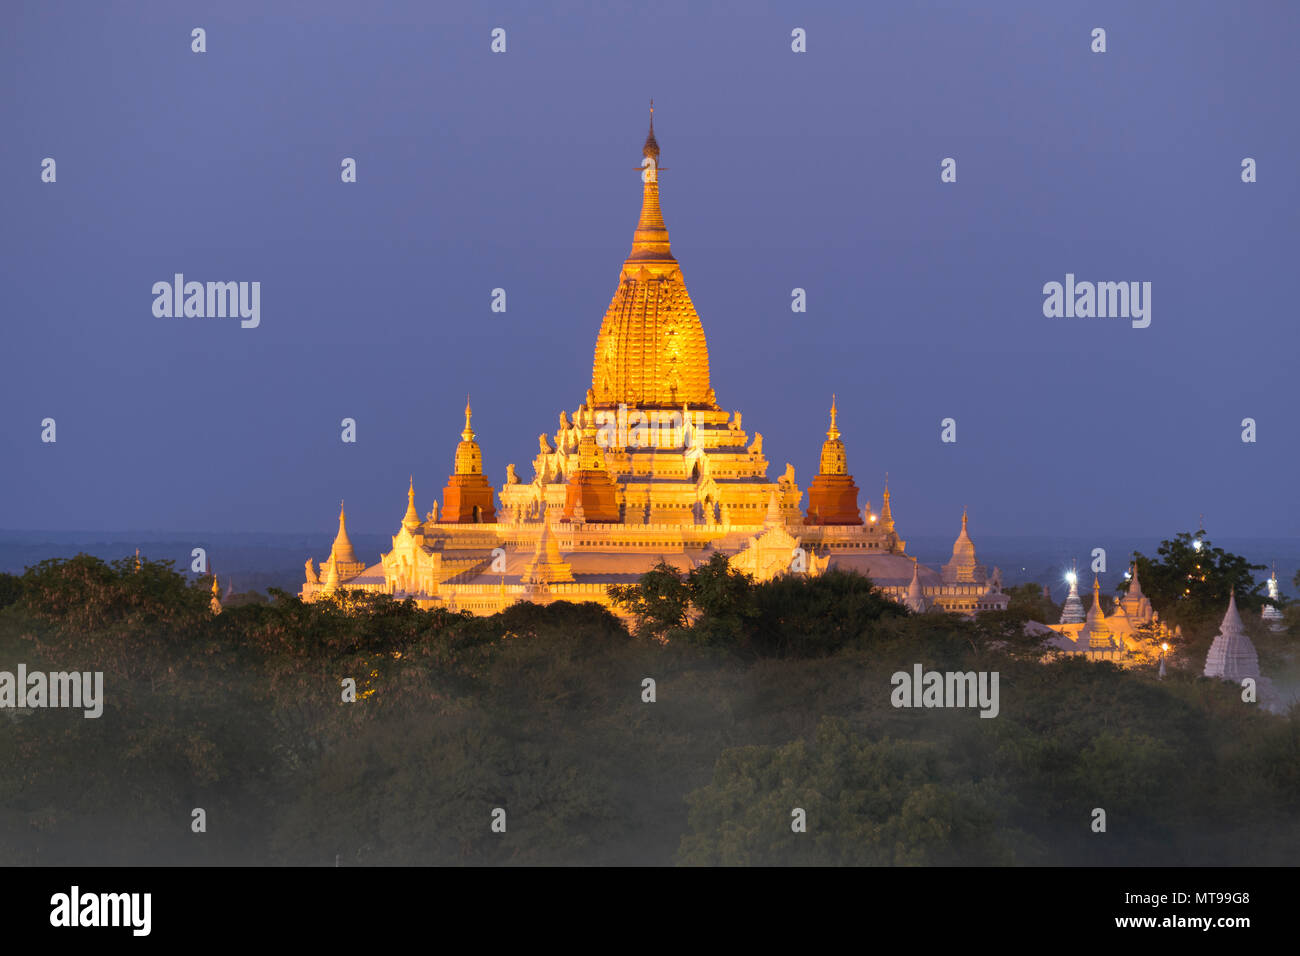 Illuminated Ananda Pagoda in Bagan at night Stock Photo